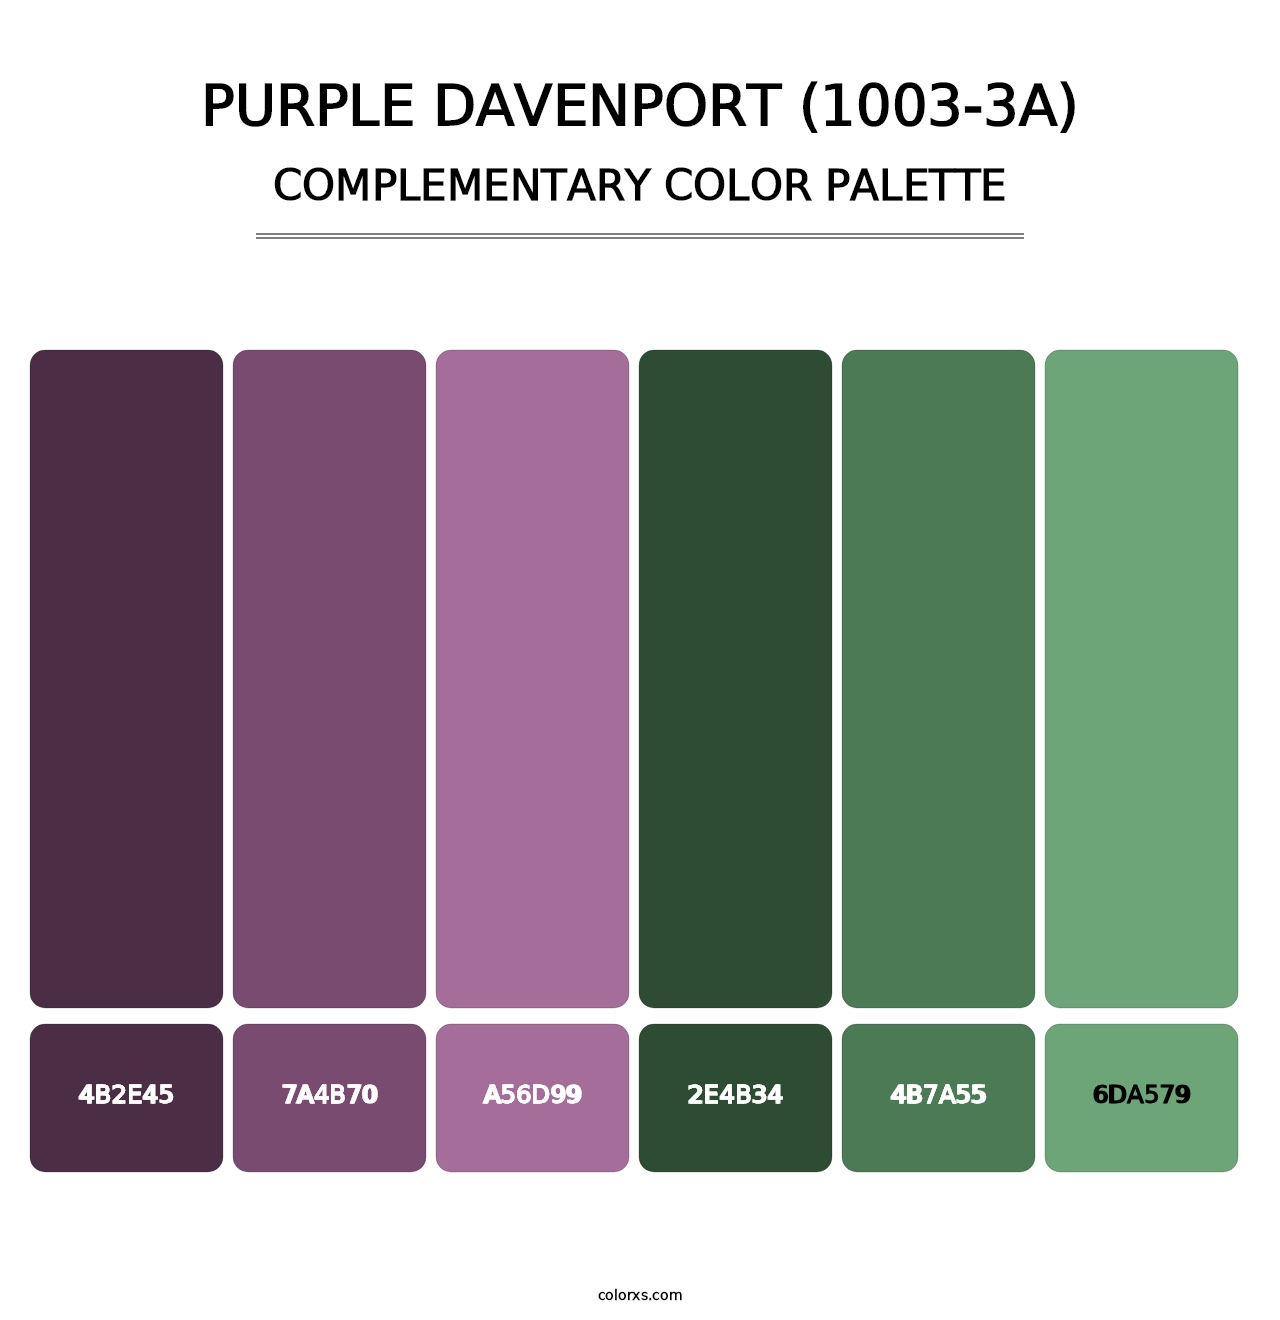 Purple Davenport (1003-3A) - Complementary Color Palette